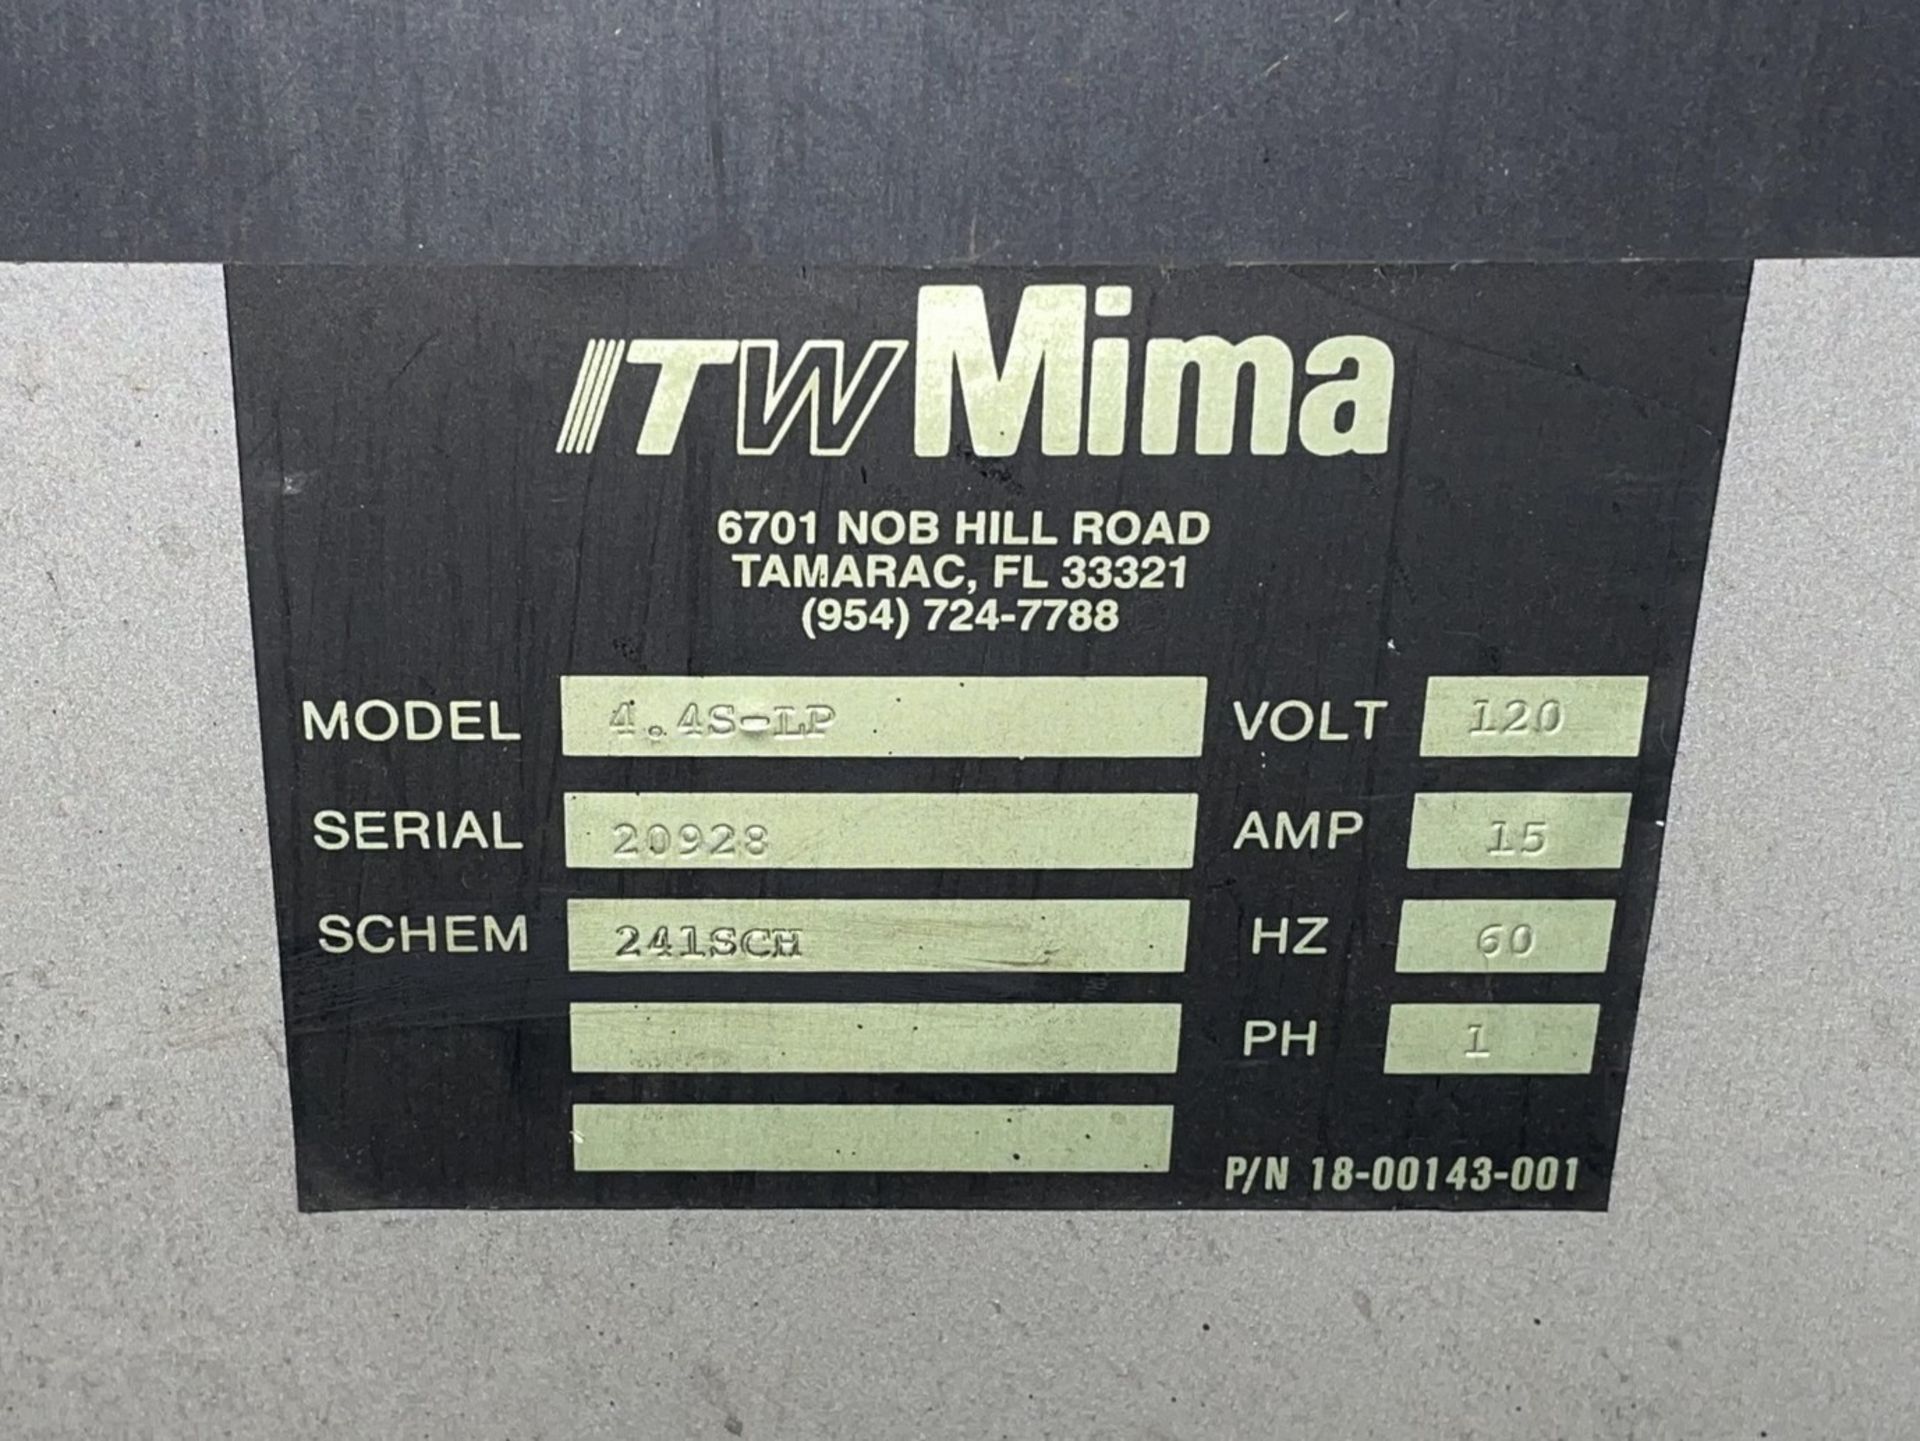 ITW Mima Mdl. 4.4S-LP Stretch Wrap Machine - Image 9 of 9